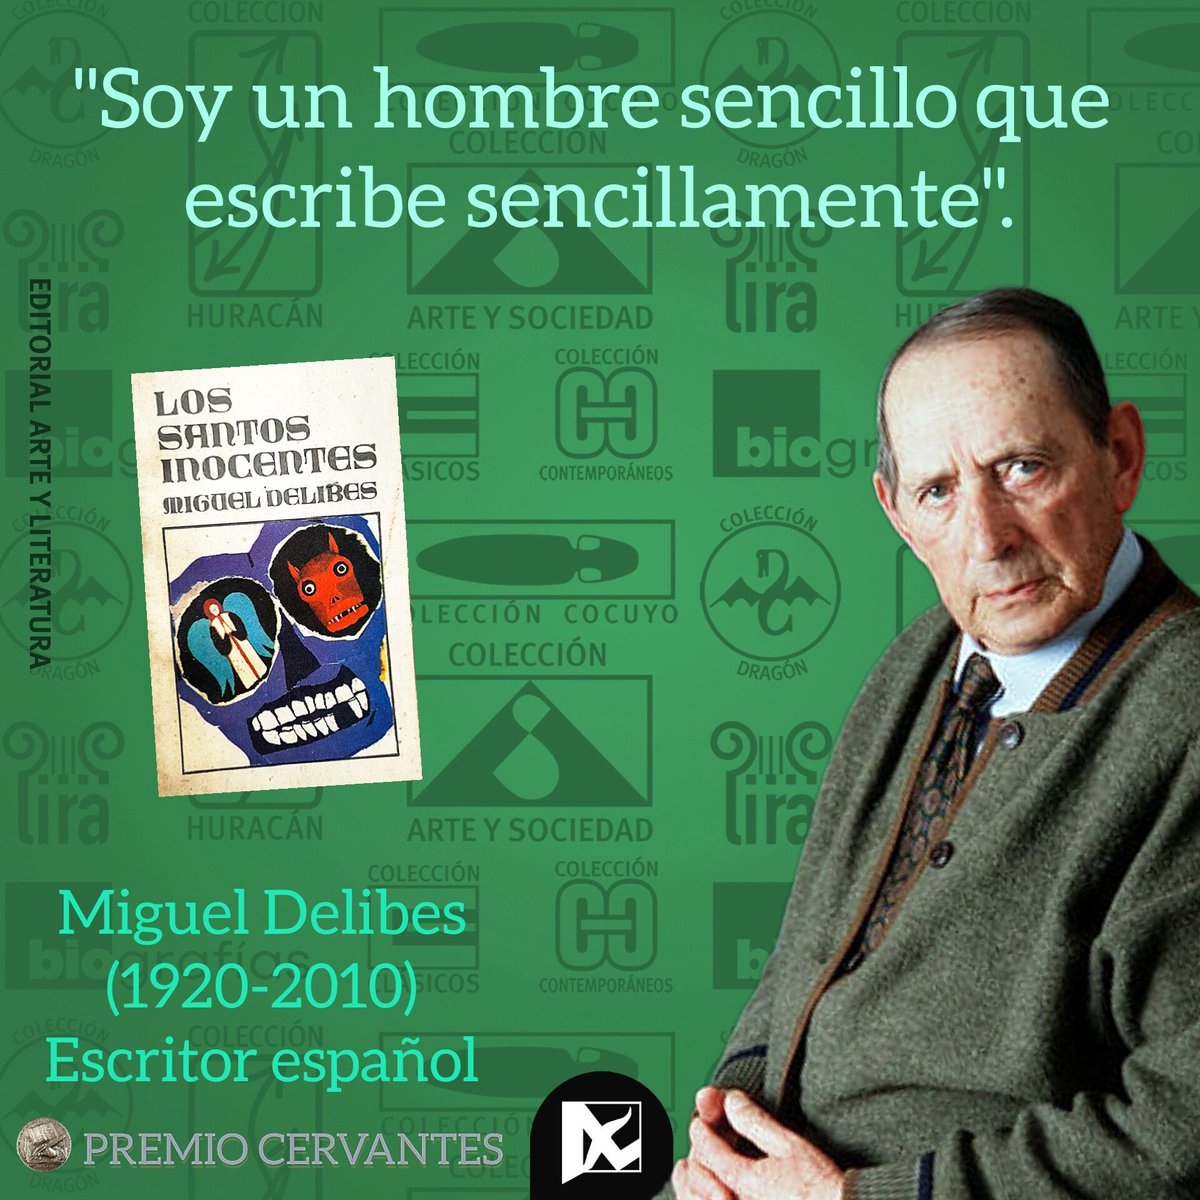 ✒️El #escritor español #MiguelDelibes falleció el 12 de #marzo de 2010 en #Valladolid, #España
🎖️Recibió, entre otros, el #PremioCervantes y el #PríncipeDeAsturias. 
📘 El gran título de la década de 1980 fue 'Los santos inocentes', publicada por @Editorial_AyL.
#LeerEsCrecer